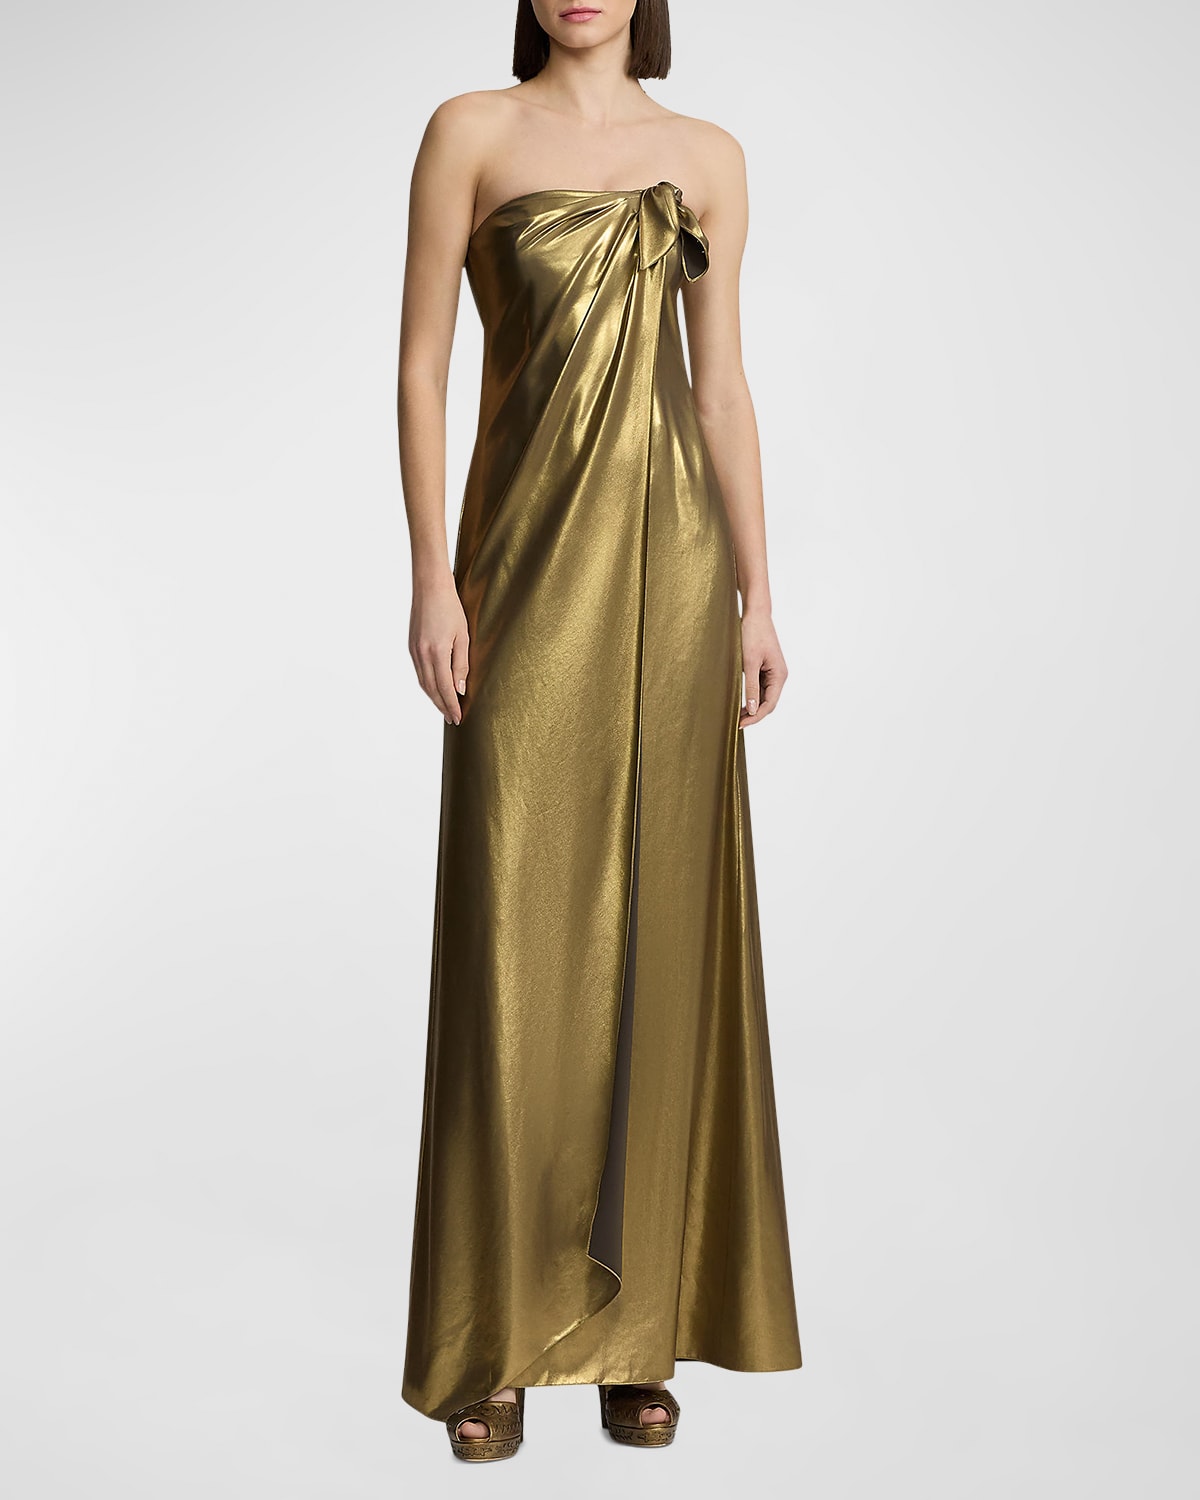 Ralph Lauren Brigitta Strapless Metallic Gown With Bow Detail In Gold